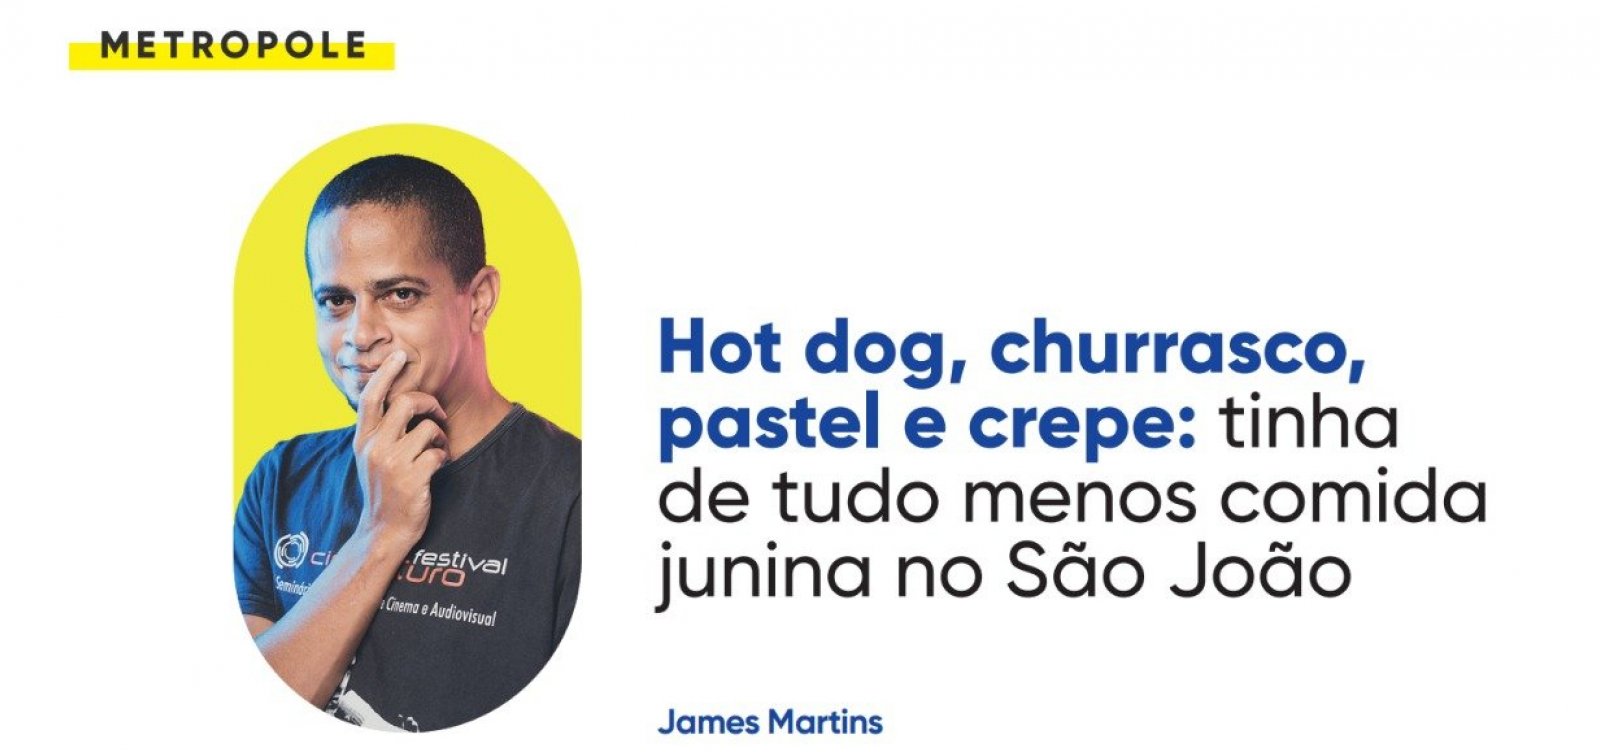 Hot dog, churrasco, pastel e crepe: tinha de tudo menos comida junina no São João